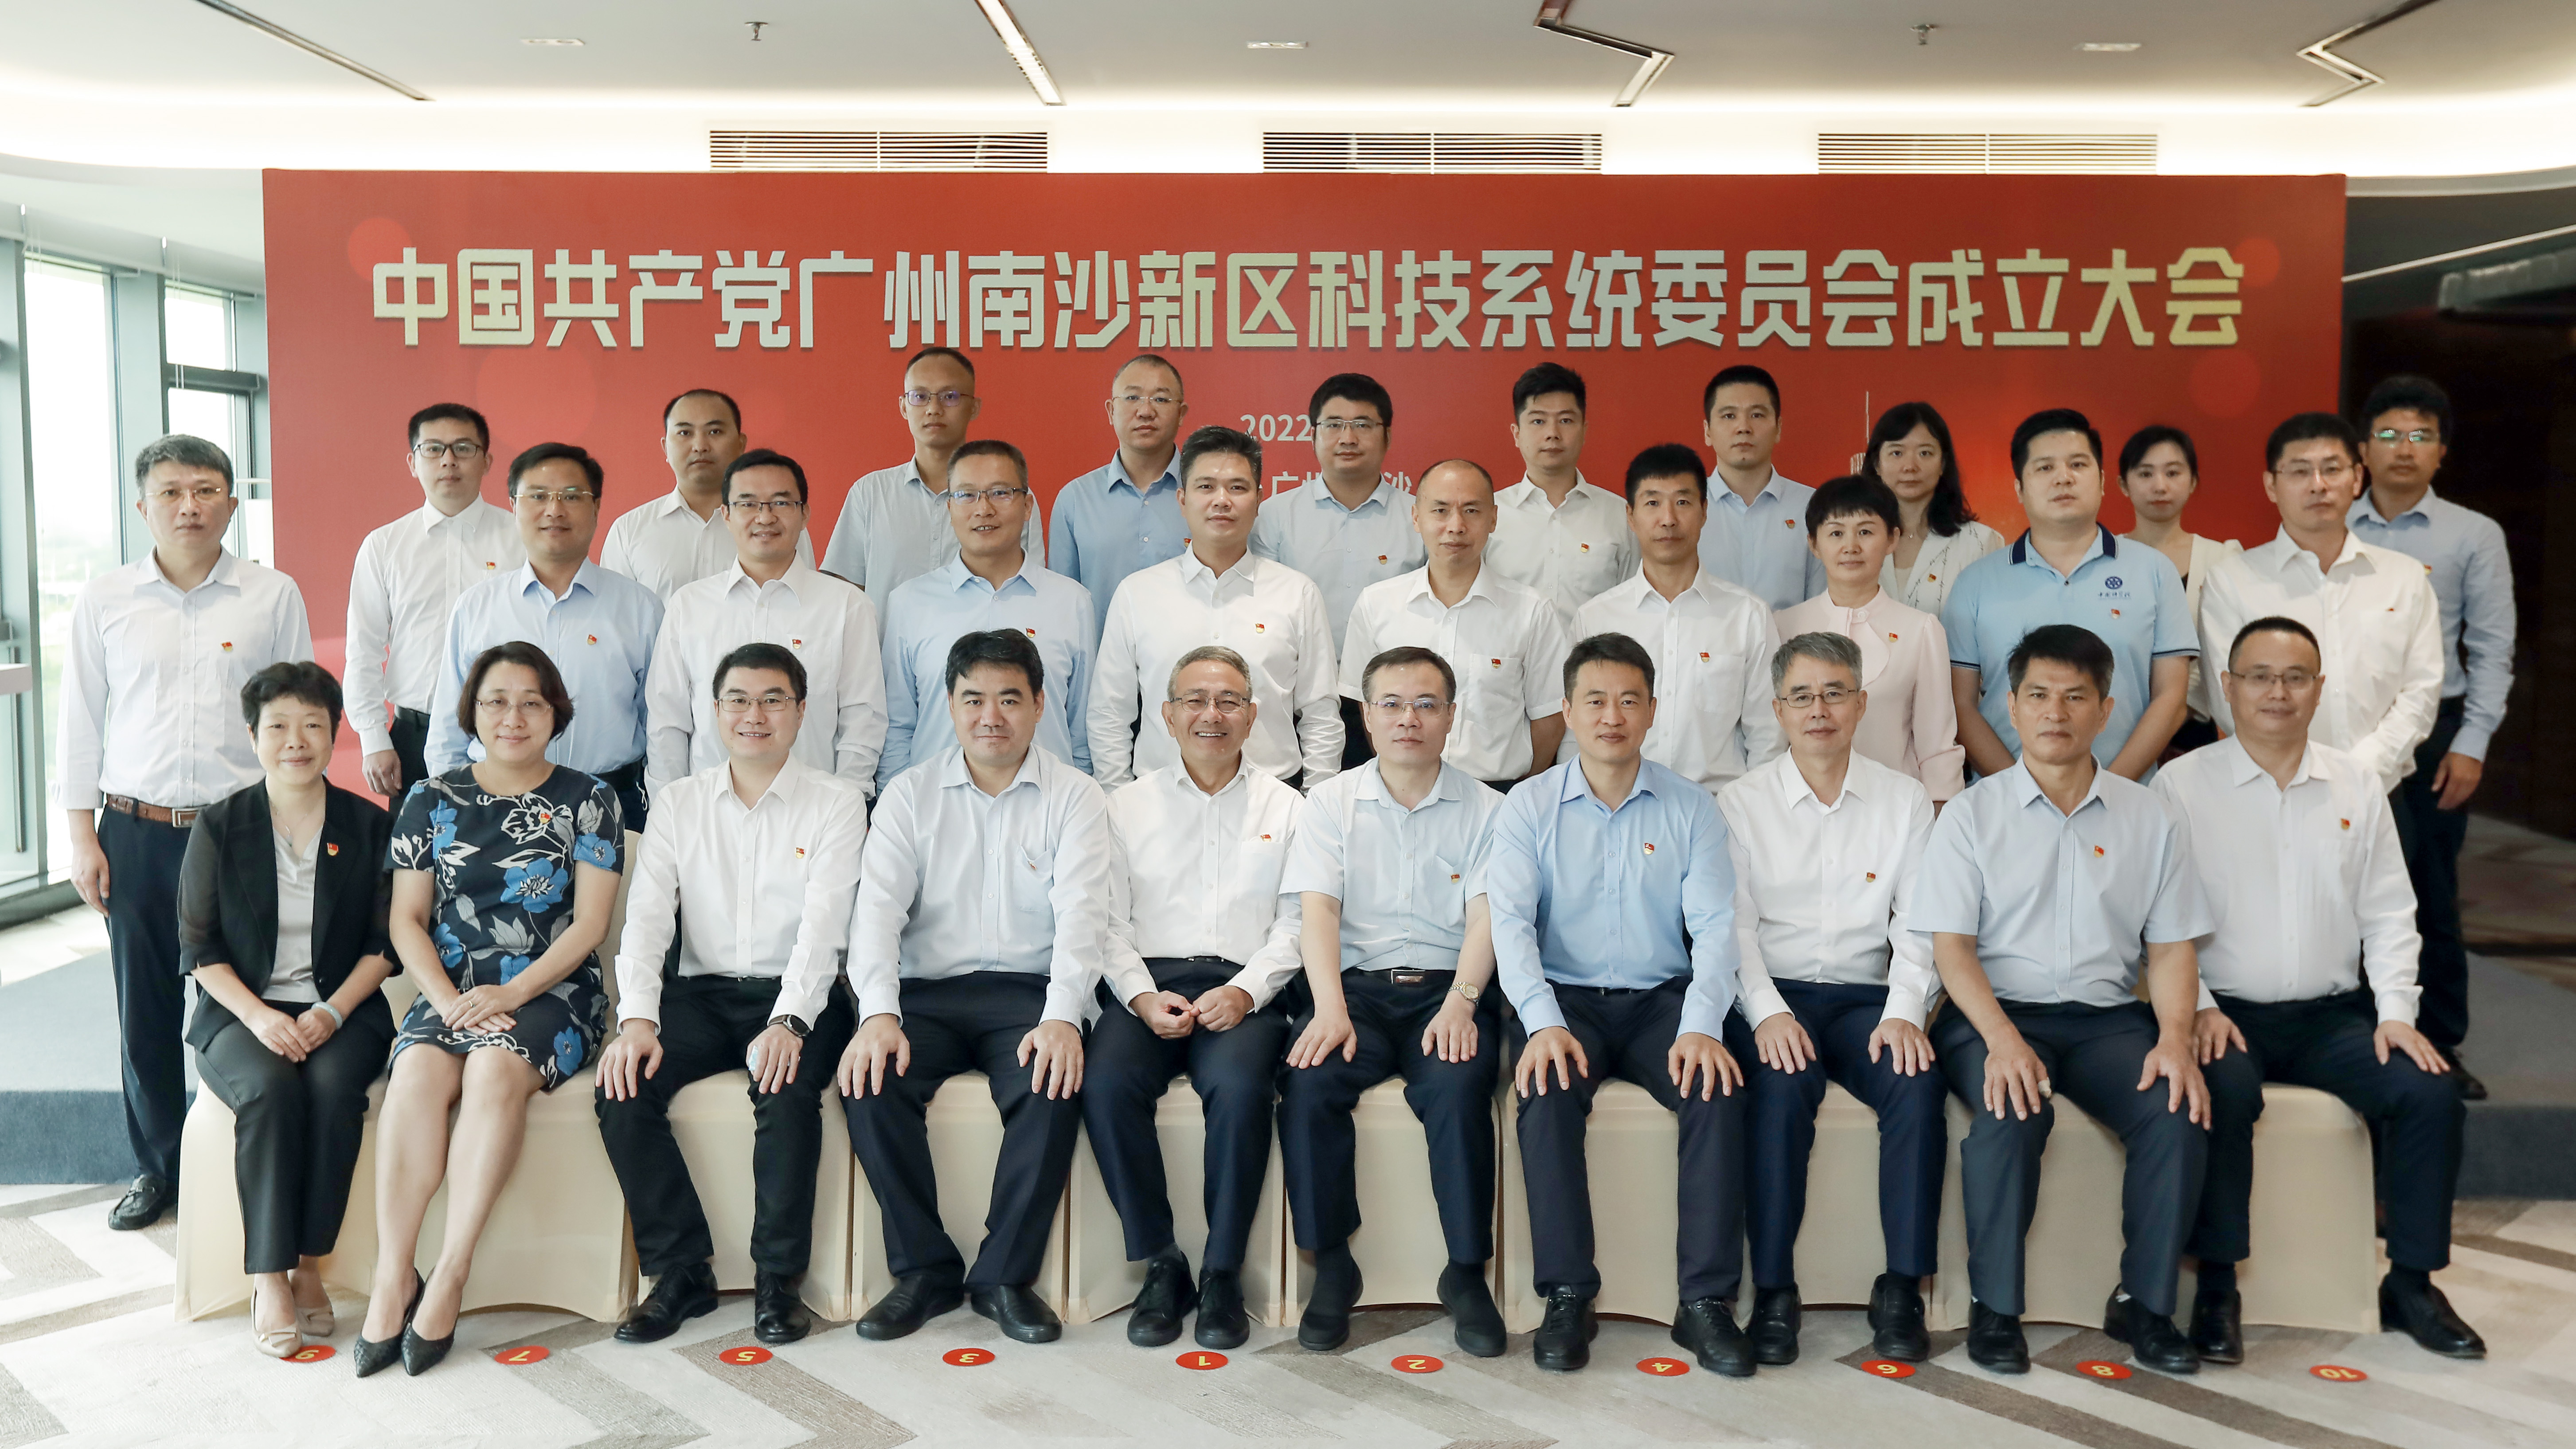 首个国家级新区科技系统党委成立 中国共产党广州南沙新区科技系统委员会正式挂牌